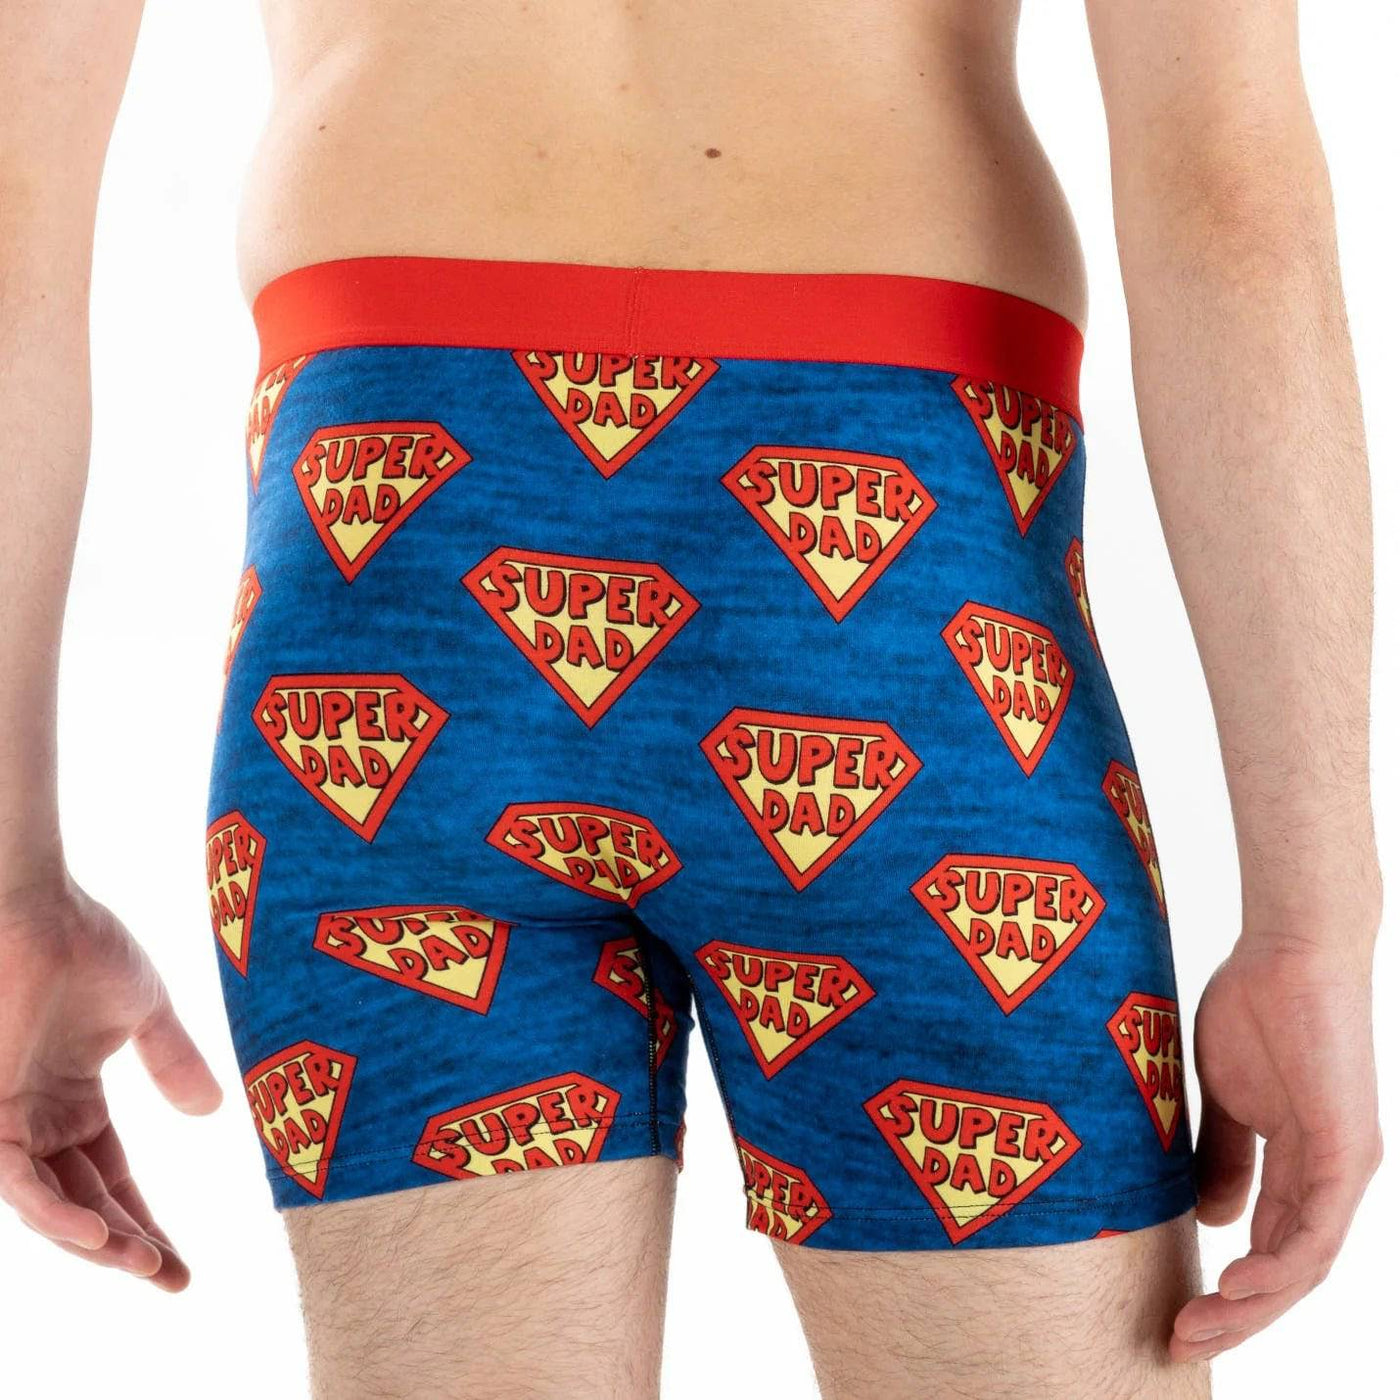 Men's Super Dad Underwear - The Local Space